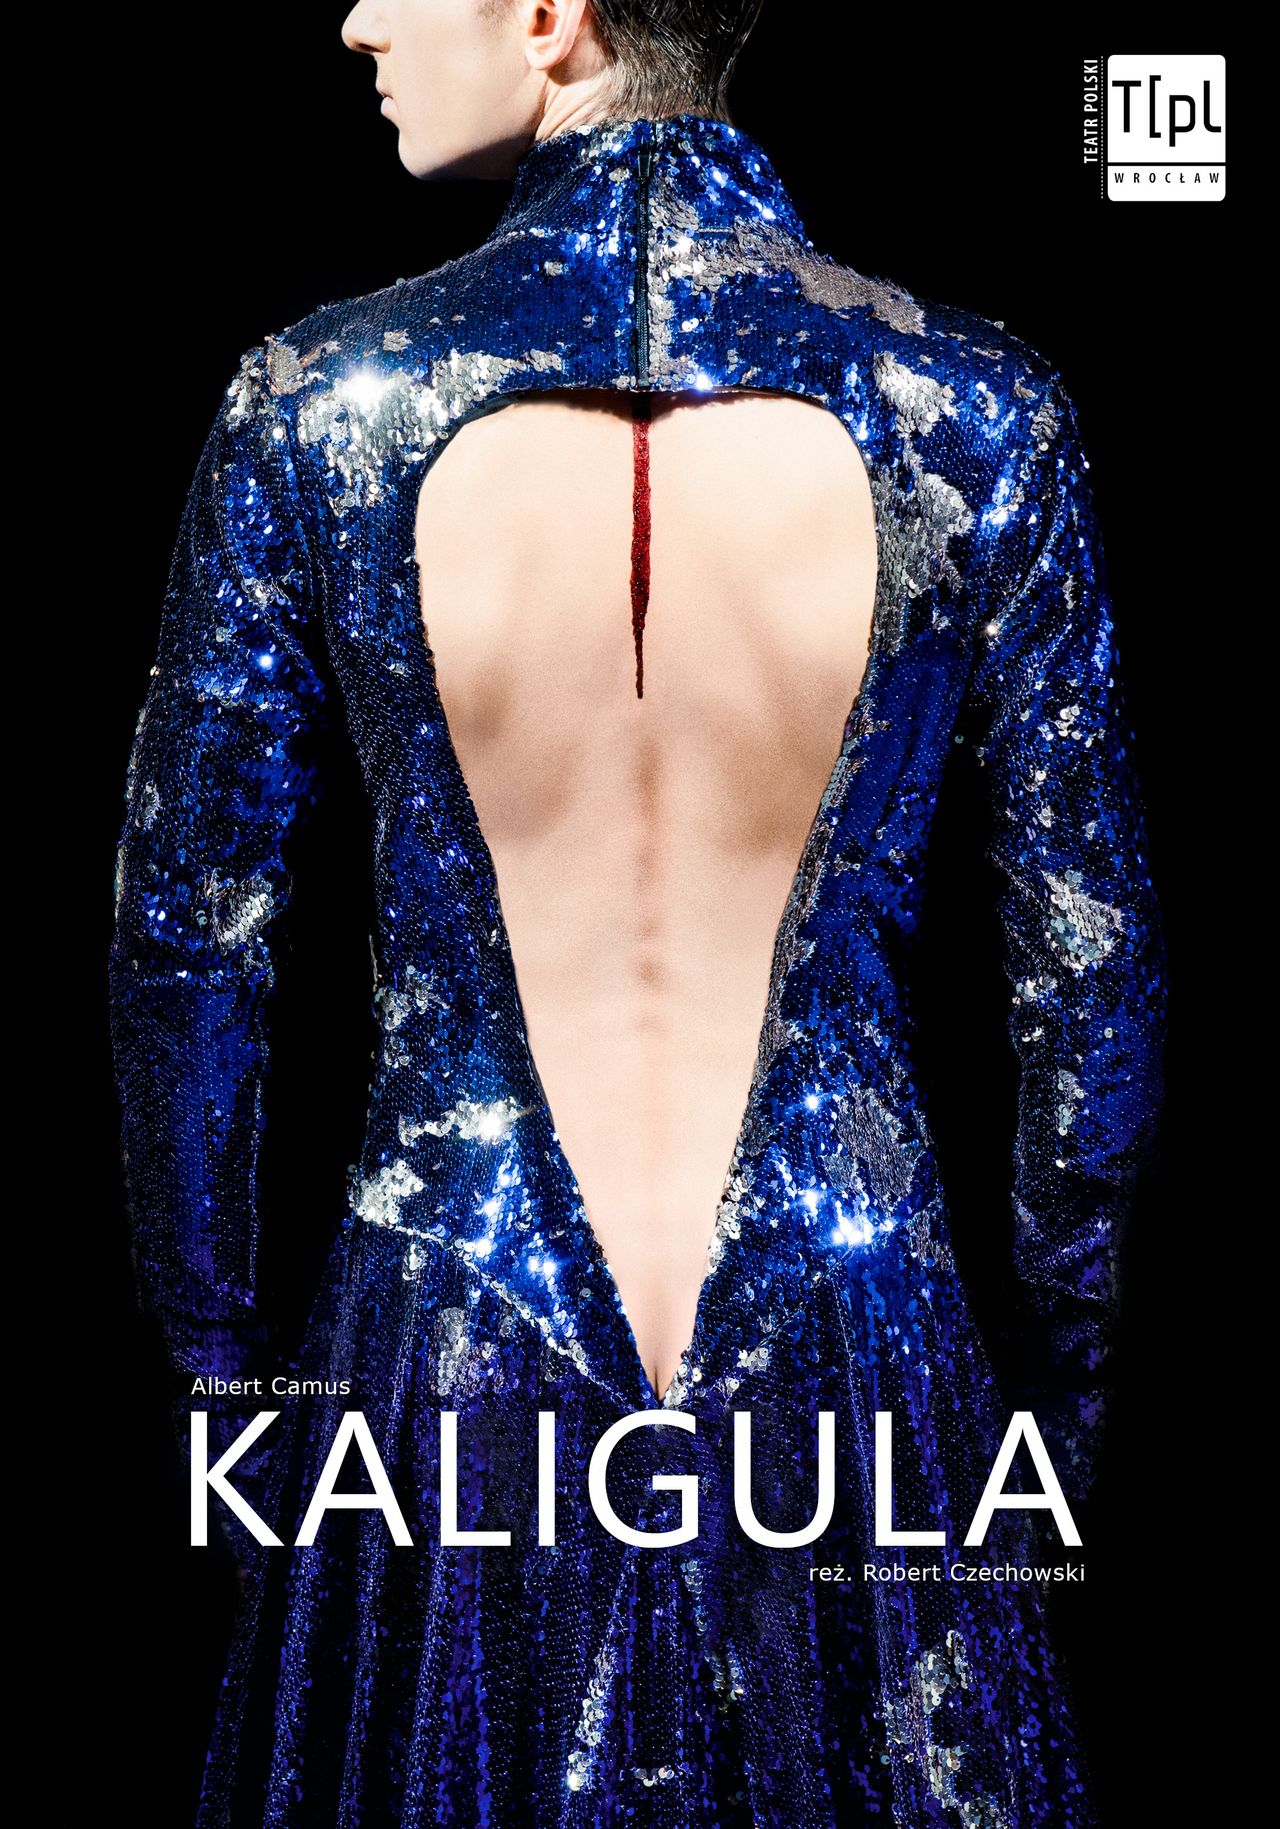 Plakat przedstawienia "Kaligula" w reżyserii Roberta Czechowskiego, premiera w piątek 26 marca 2021